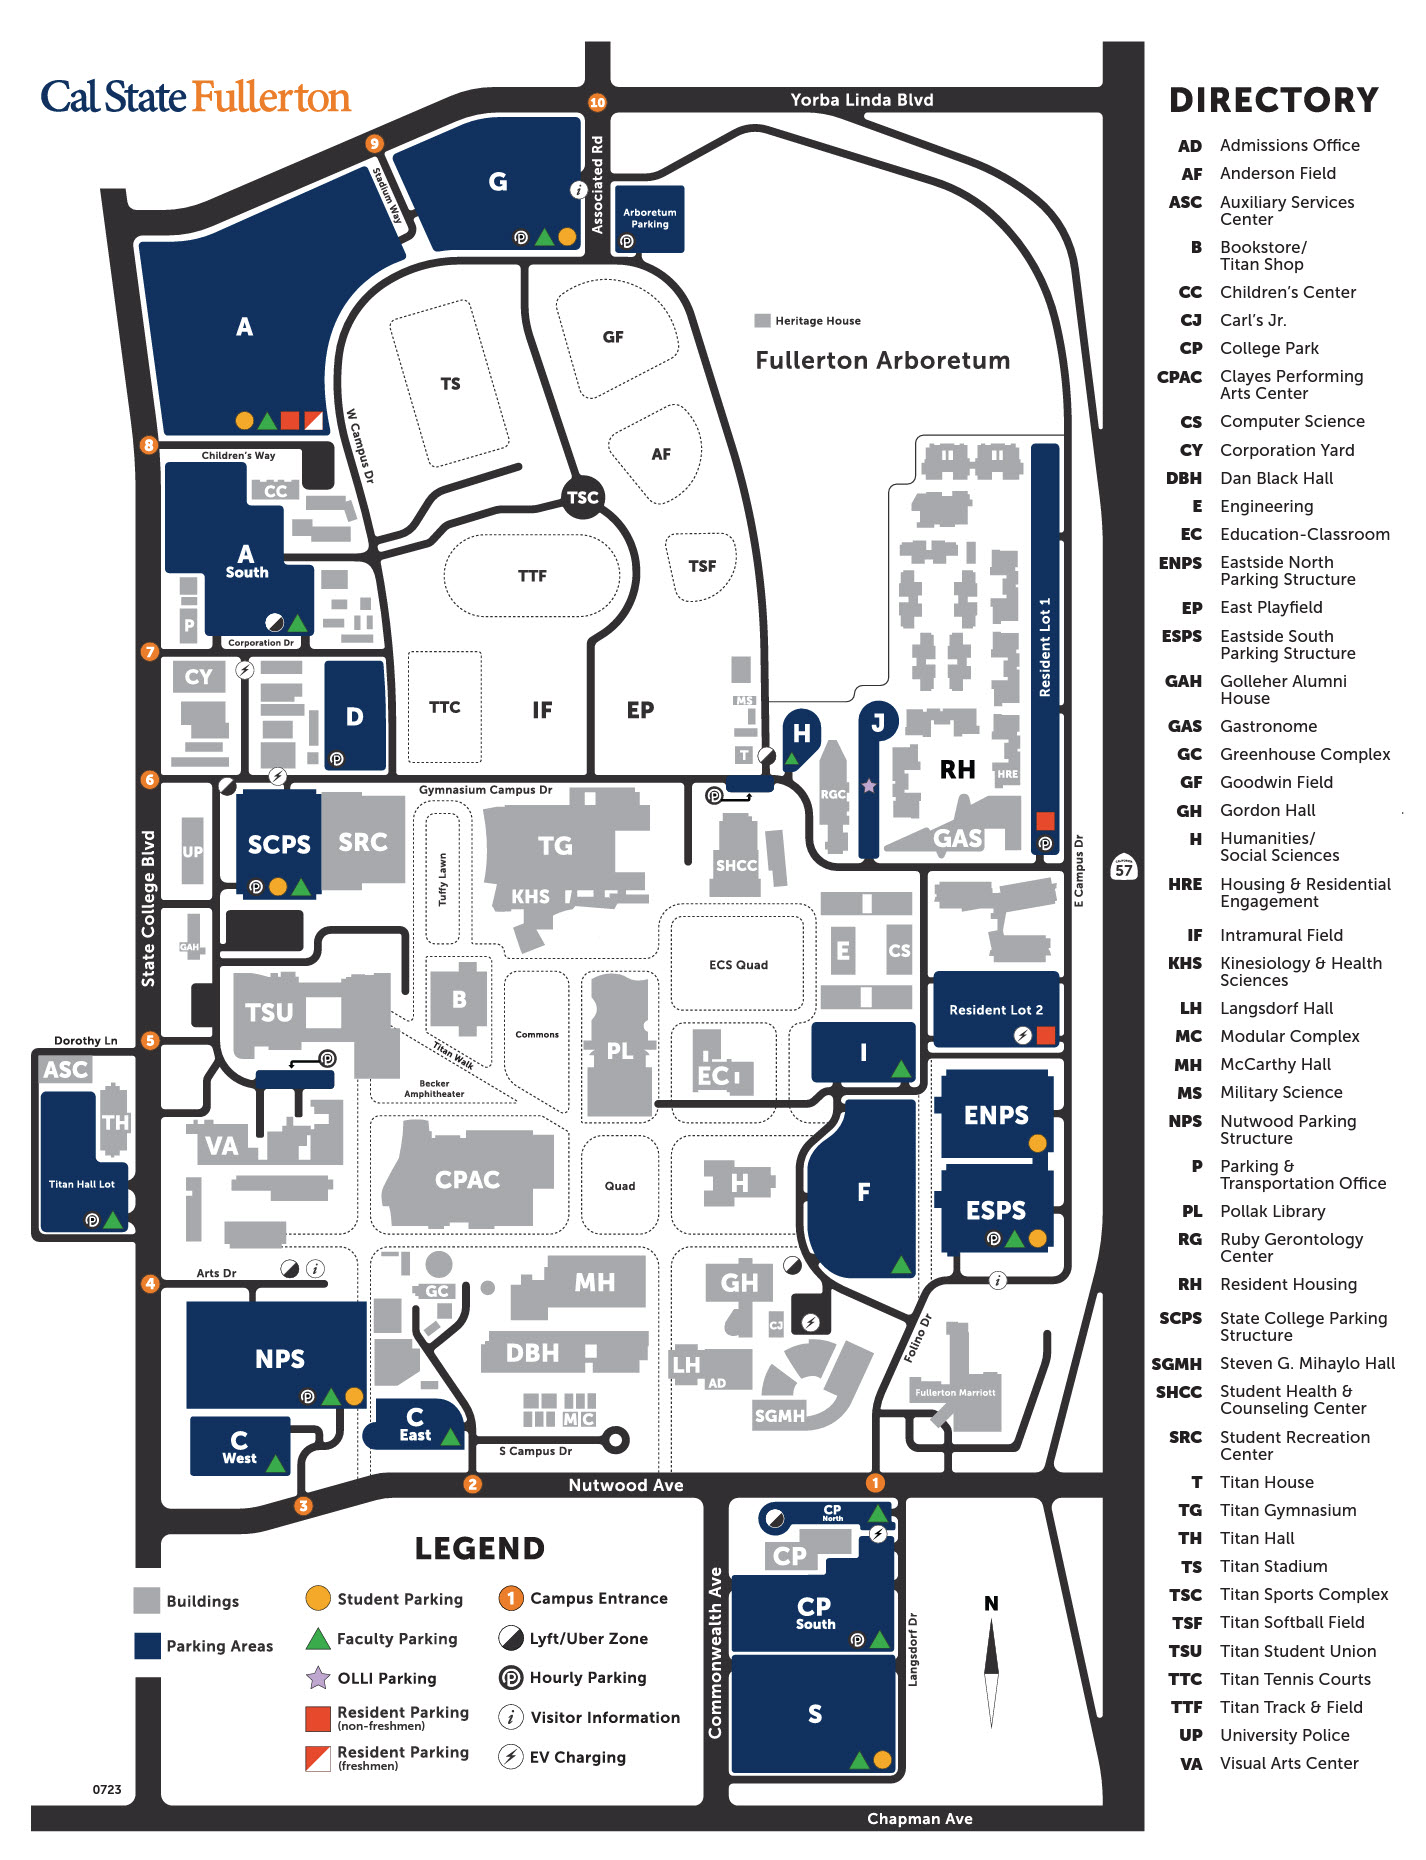 CSUF Campus Map 1.23 